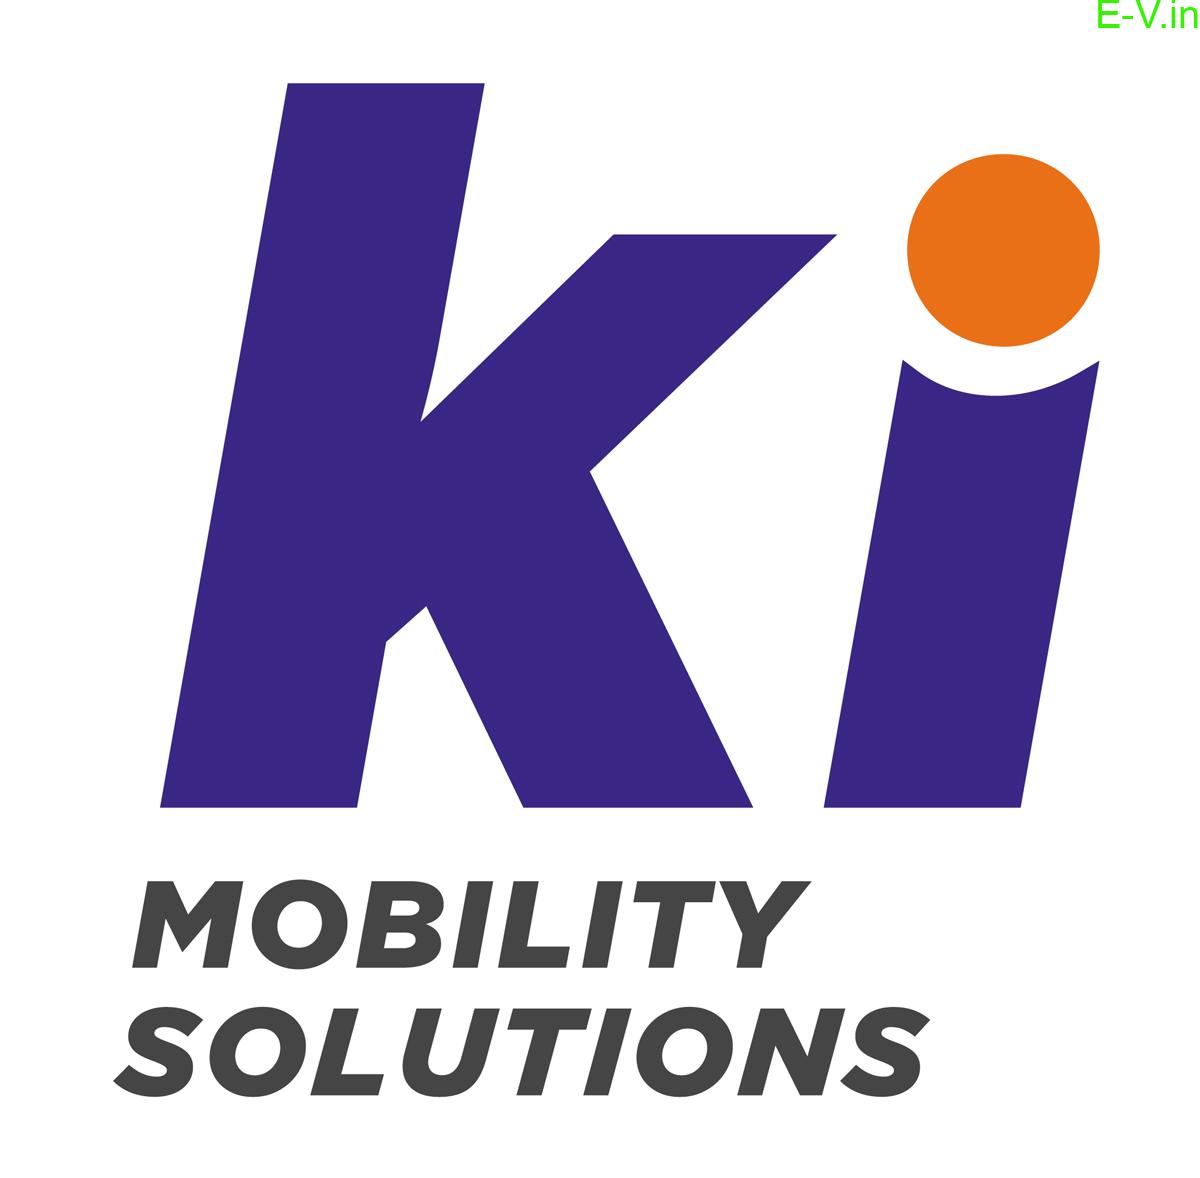 TVS subsidiary Ki Mobility